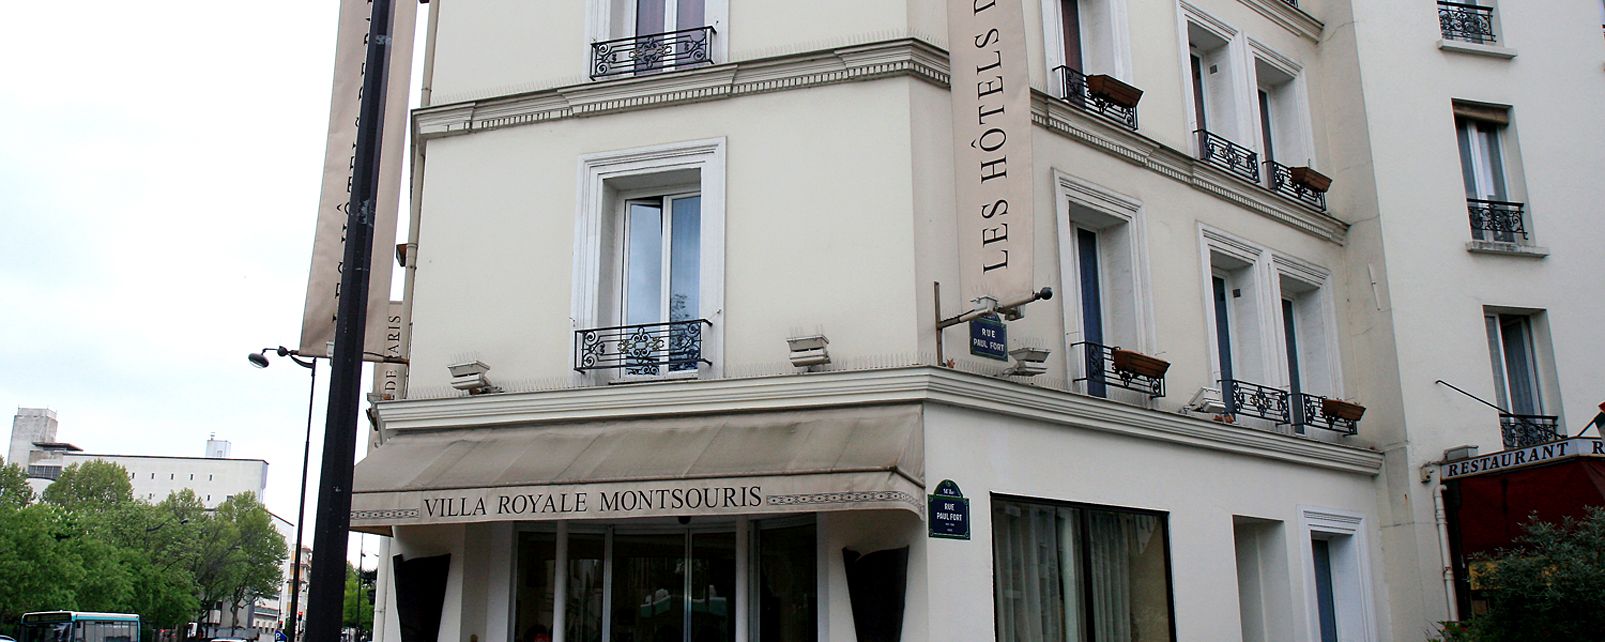 Hotel Villa Royale Montsouris Paris